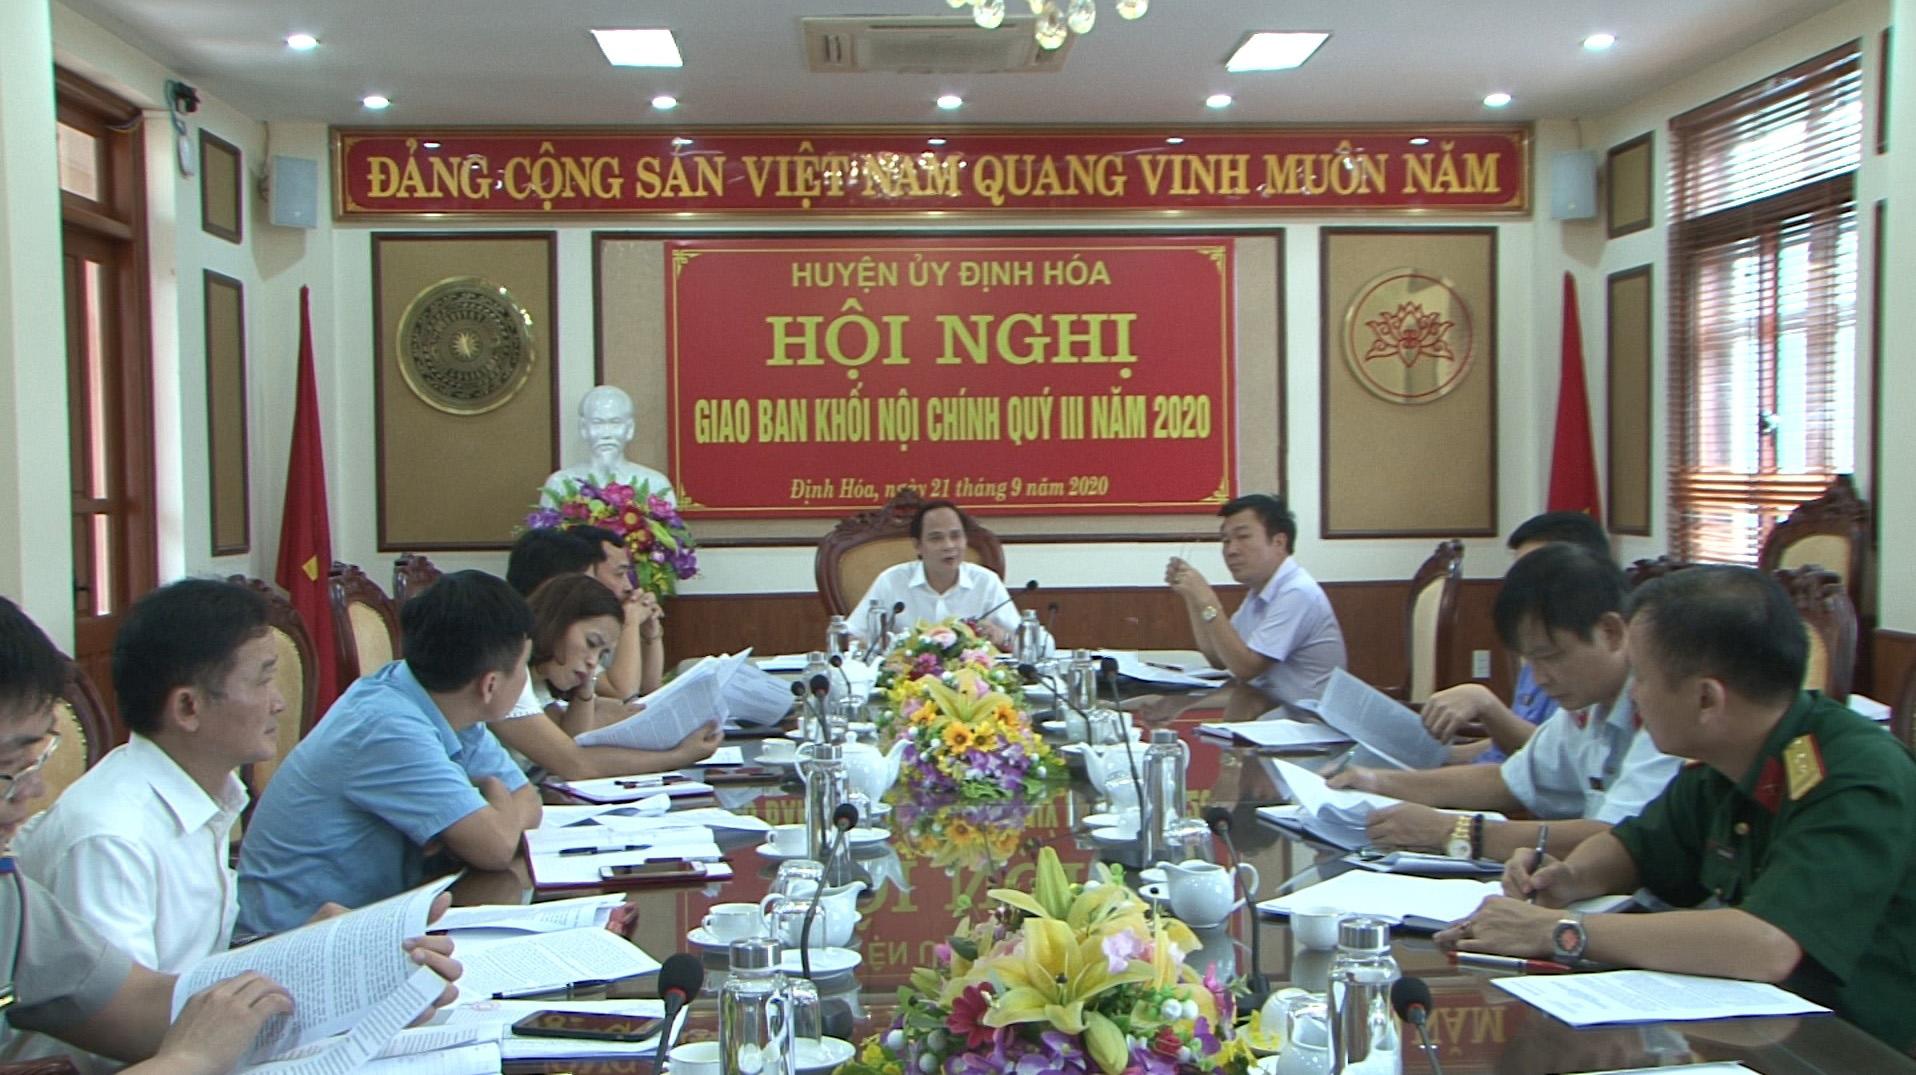 Huyện Định Hóa họp giao ban công tác Nội chính quý III năm 2020